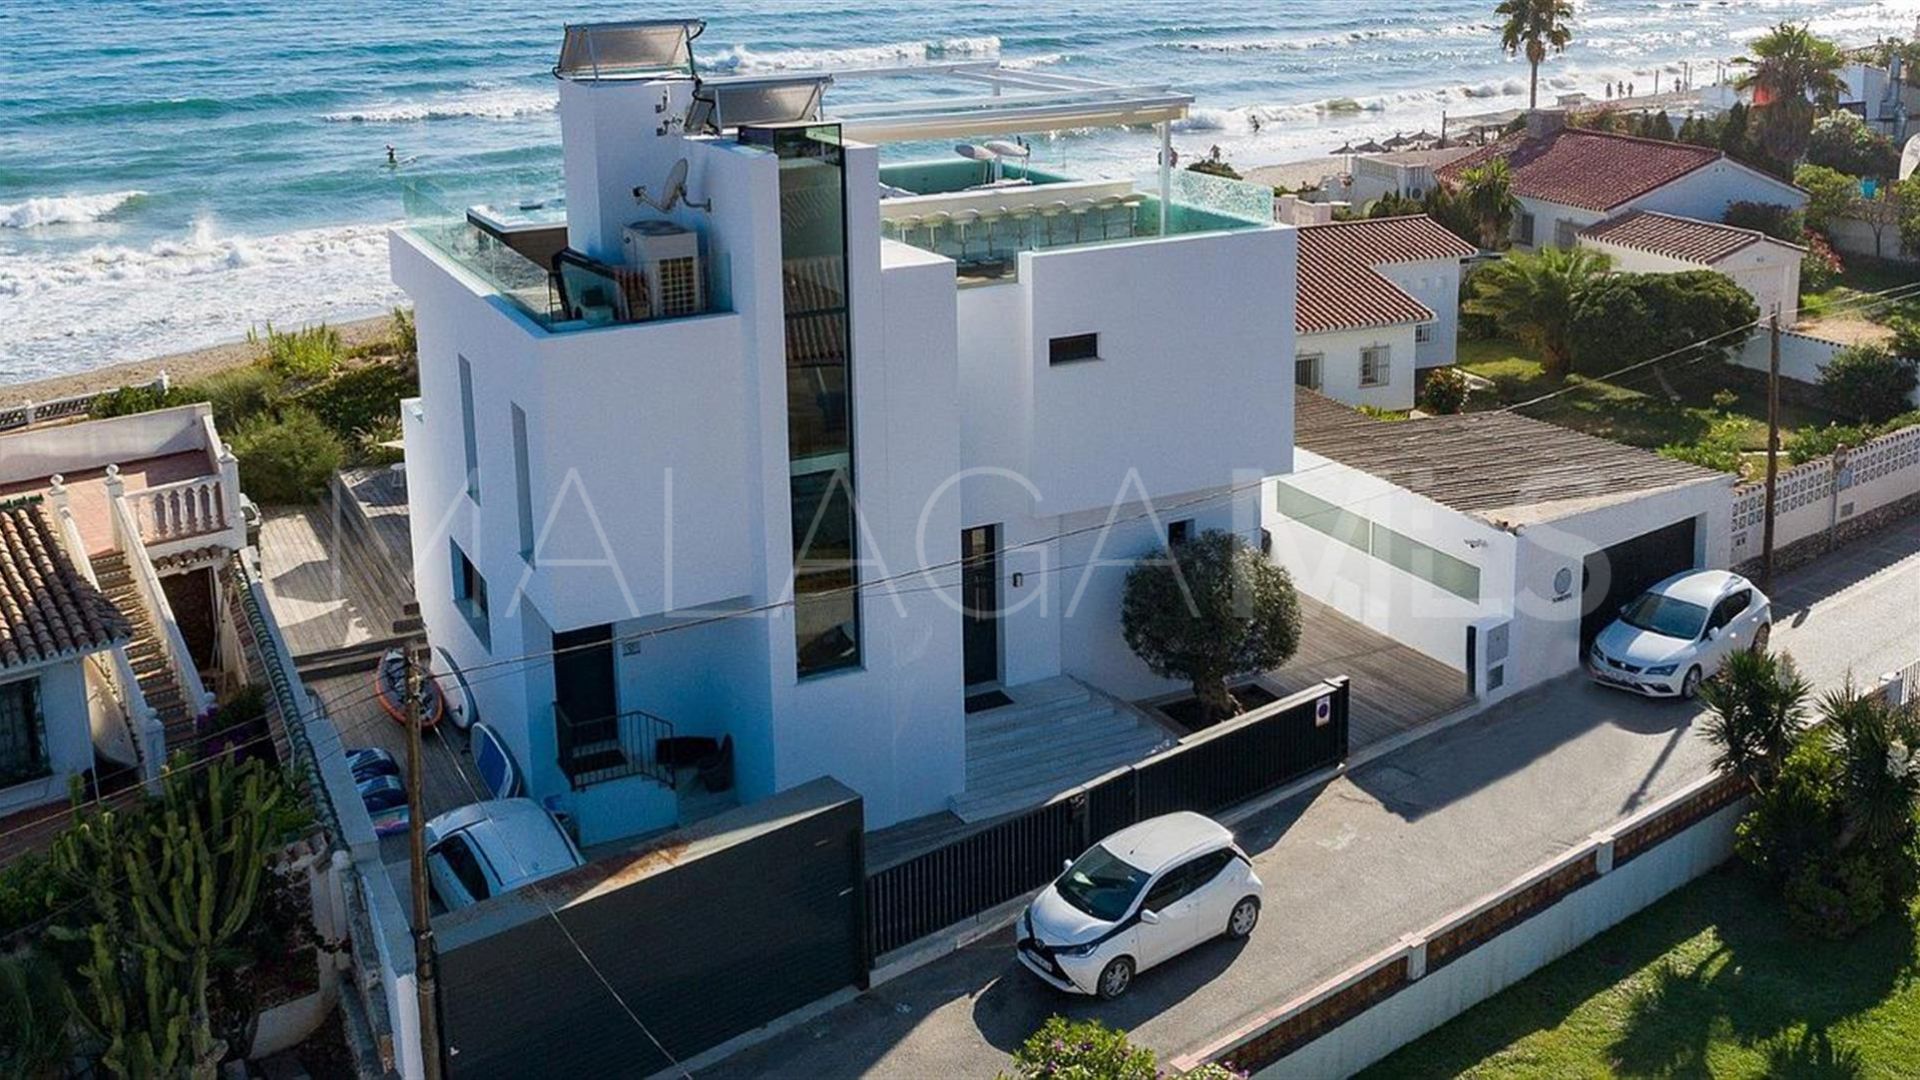 Villa a la venta de 6 bedrooms in Costabella